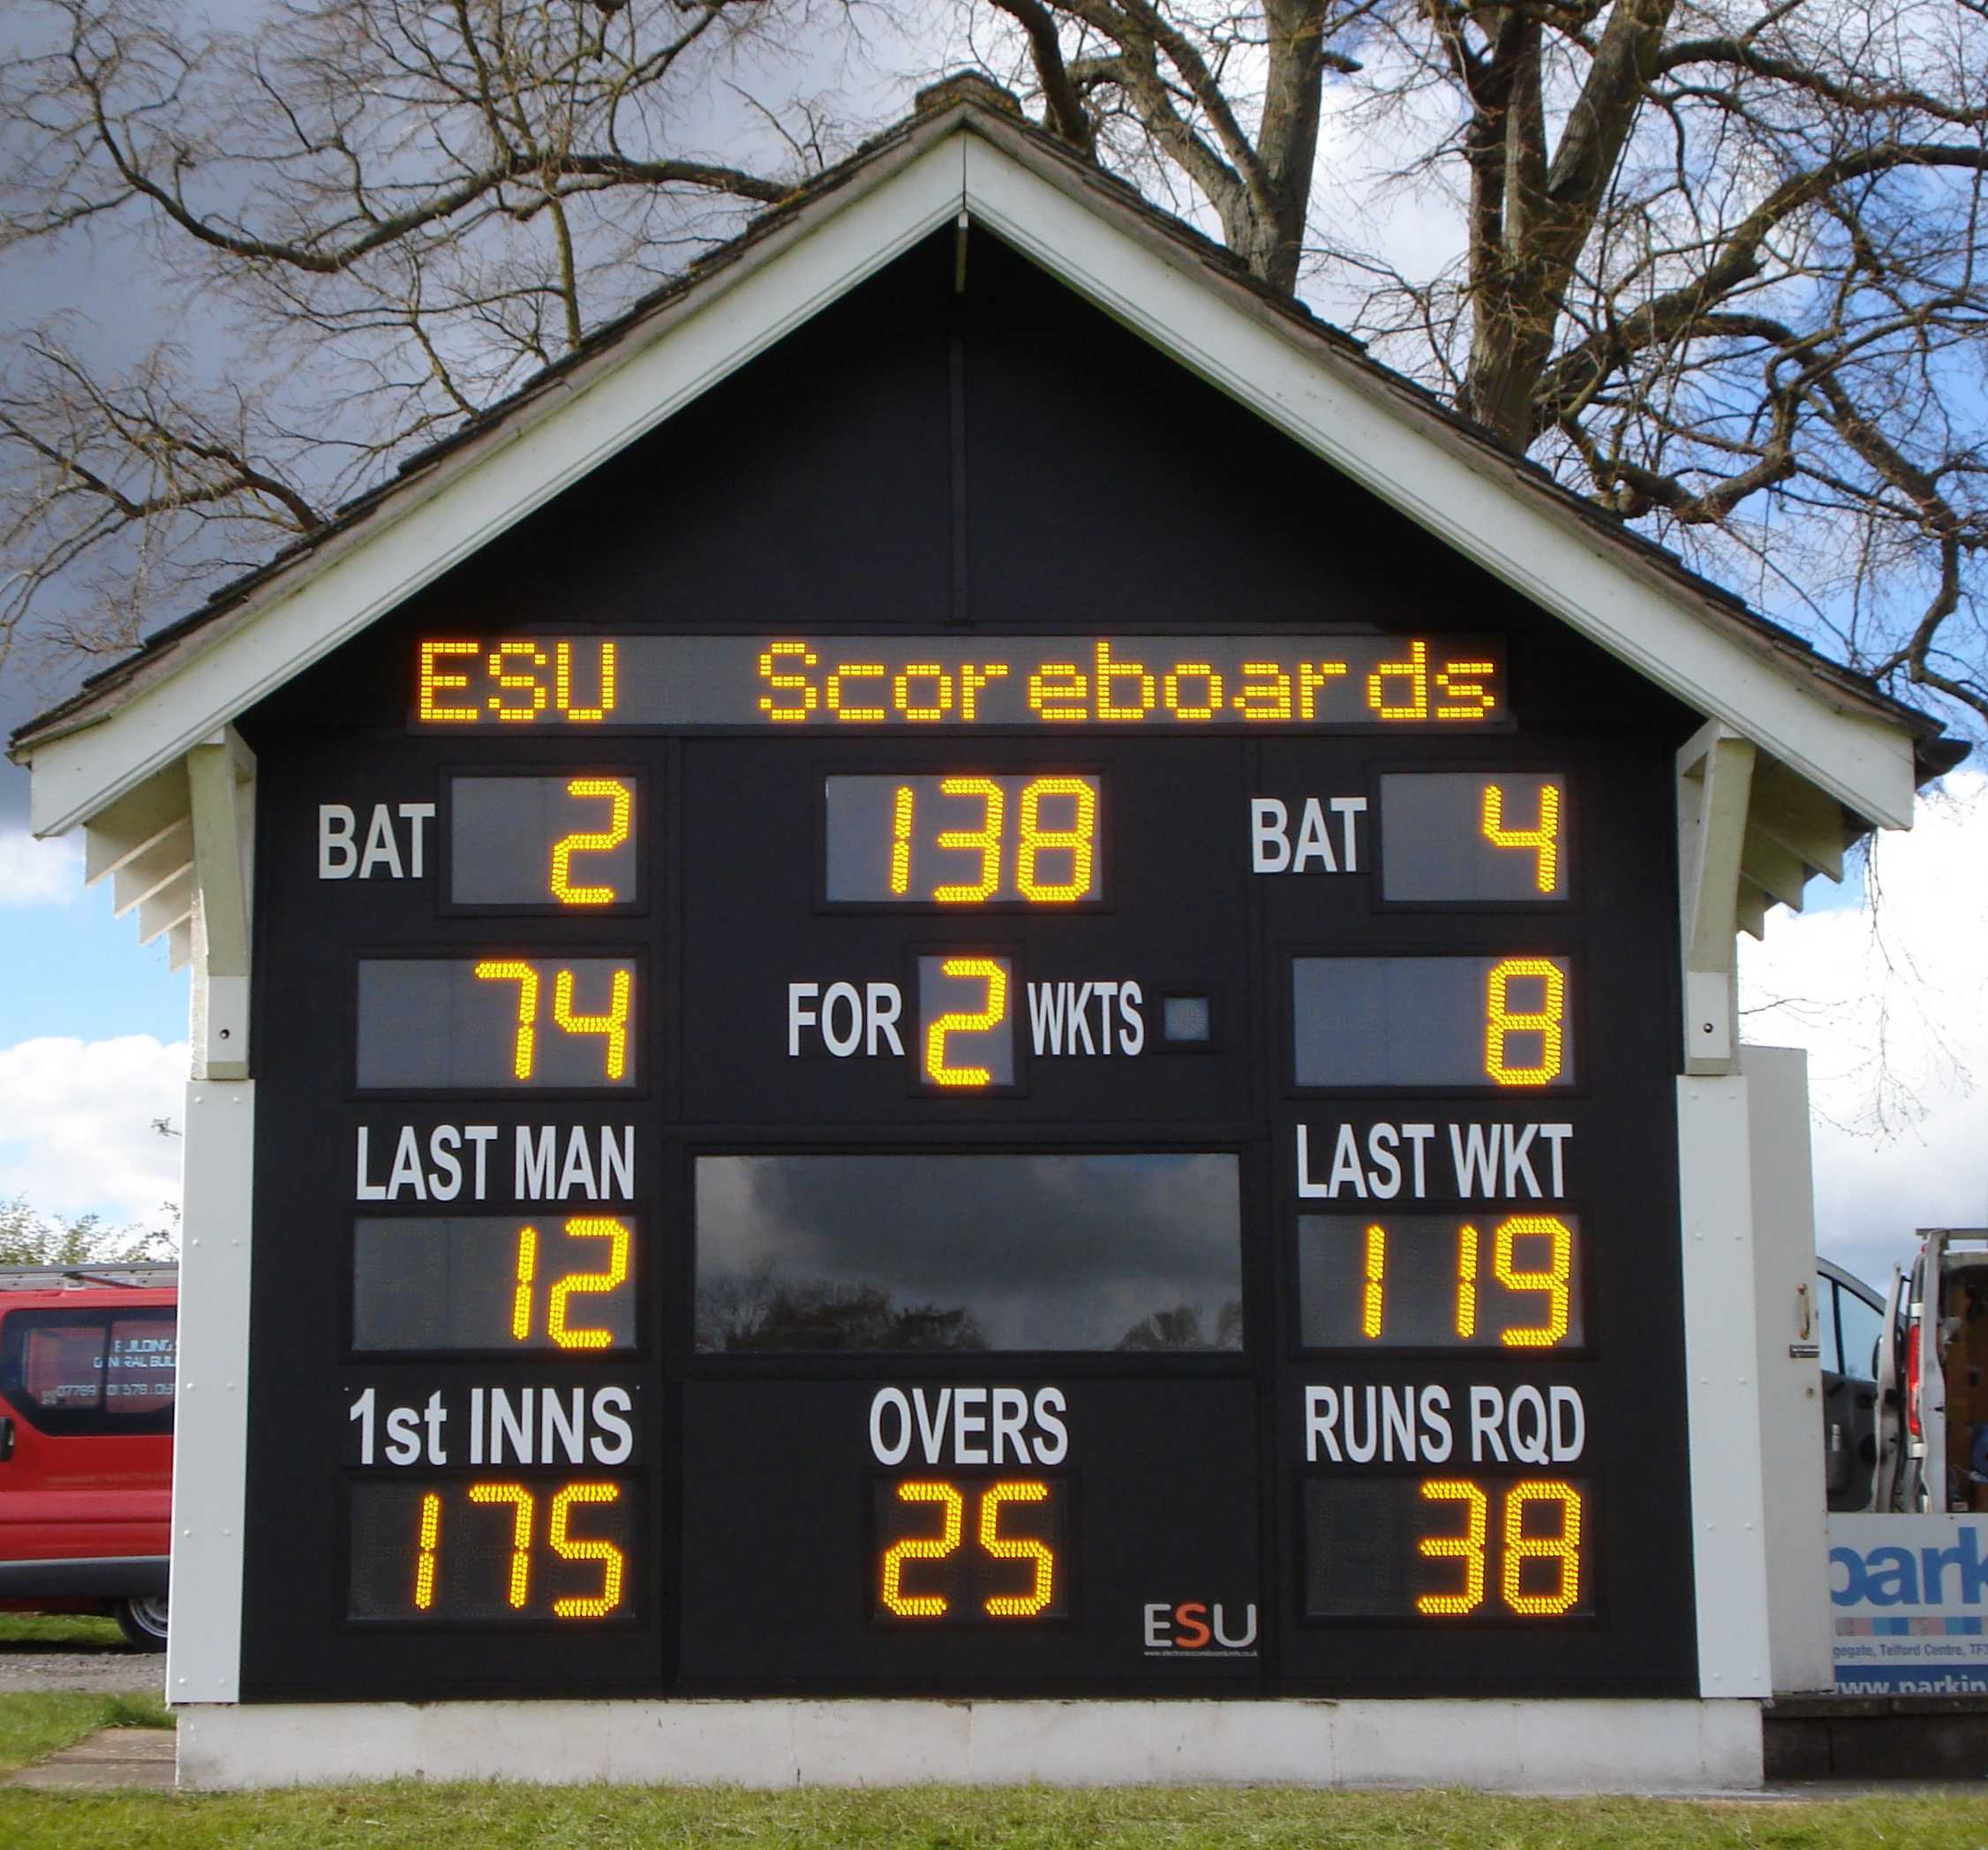 Electronic cricket scoreboard